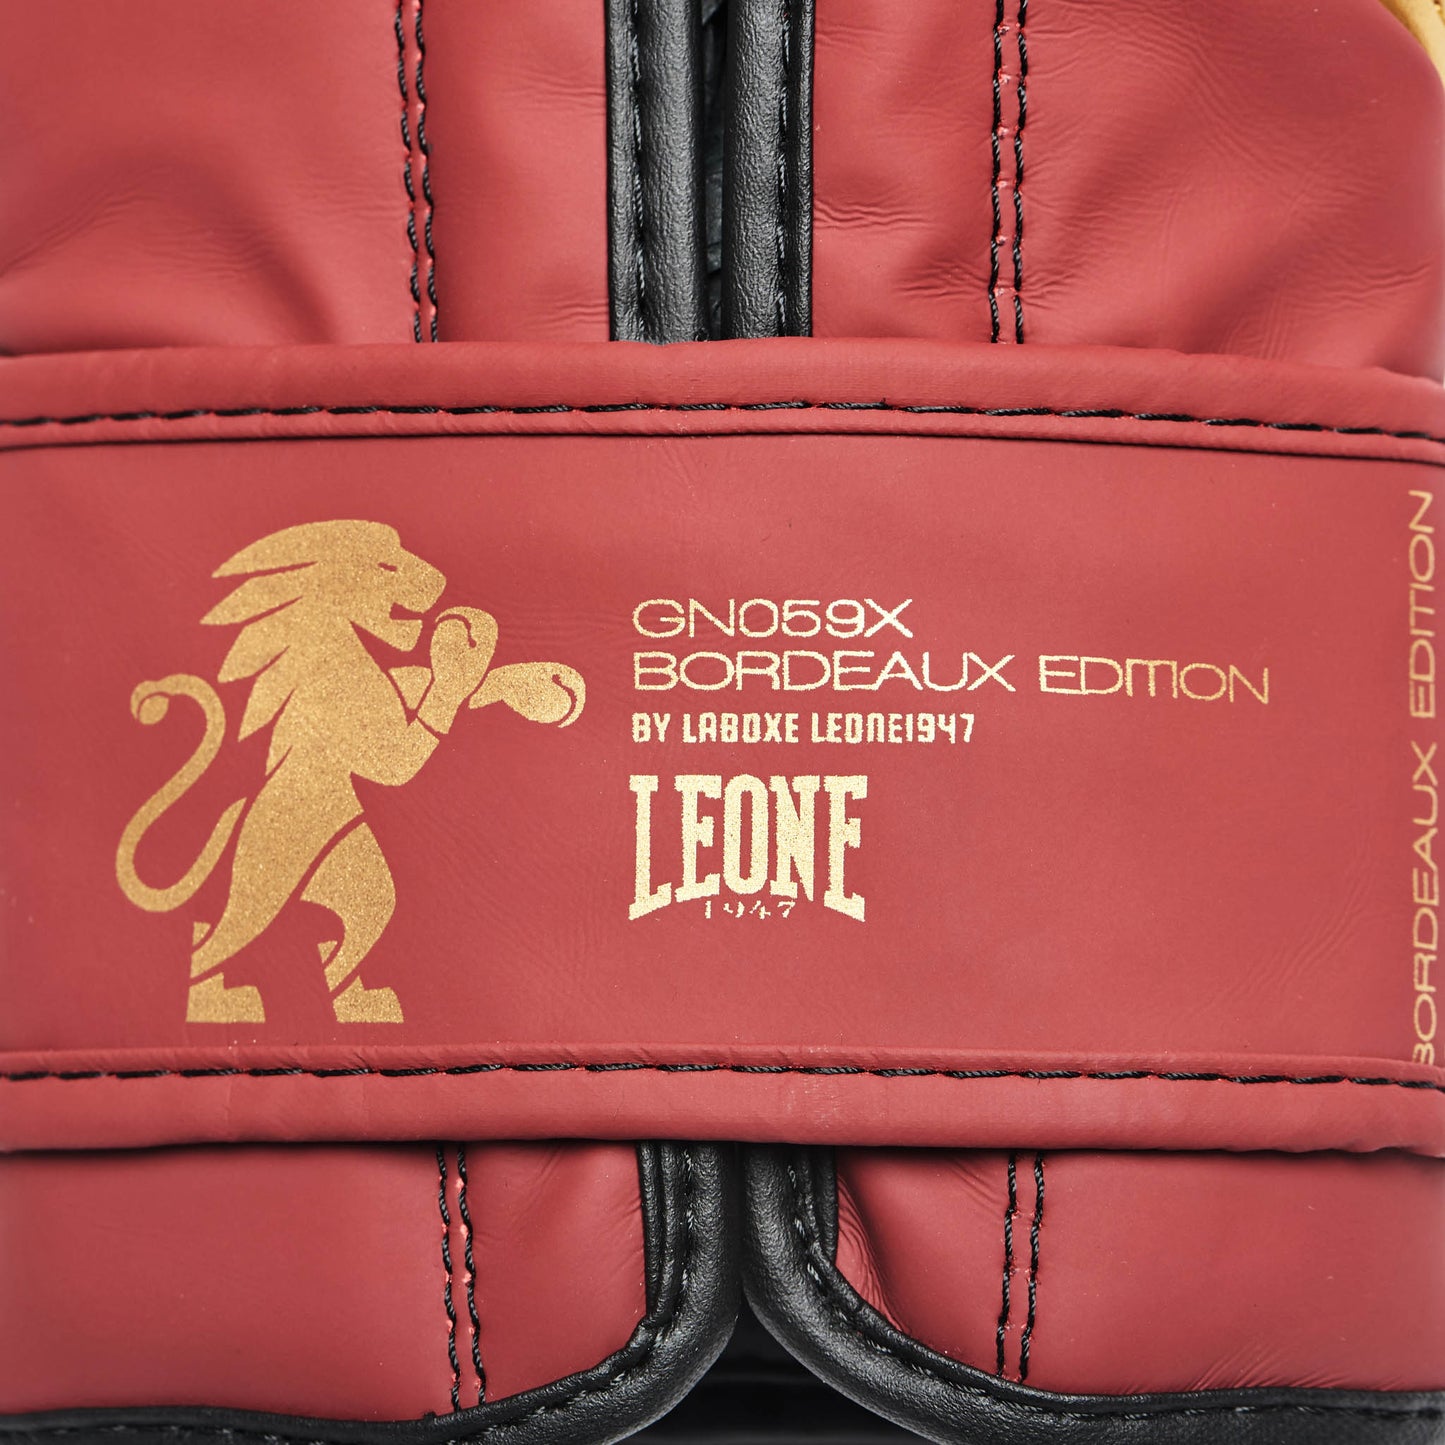 Gants de Boxe Leone GN059X - Bordeaux